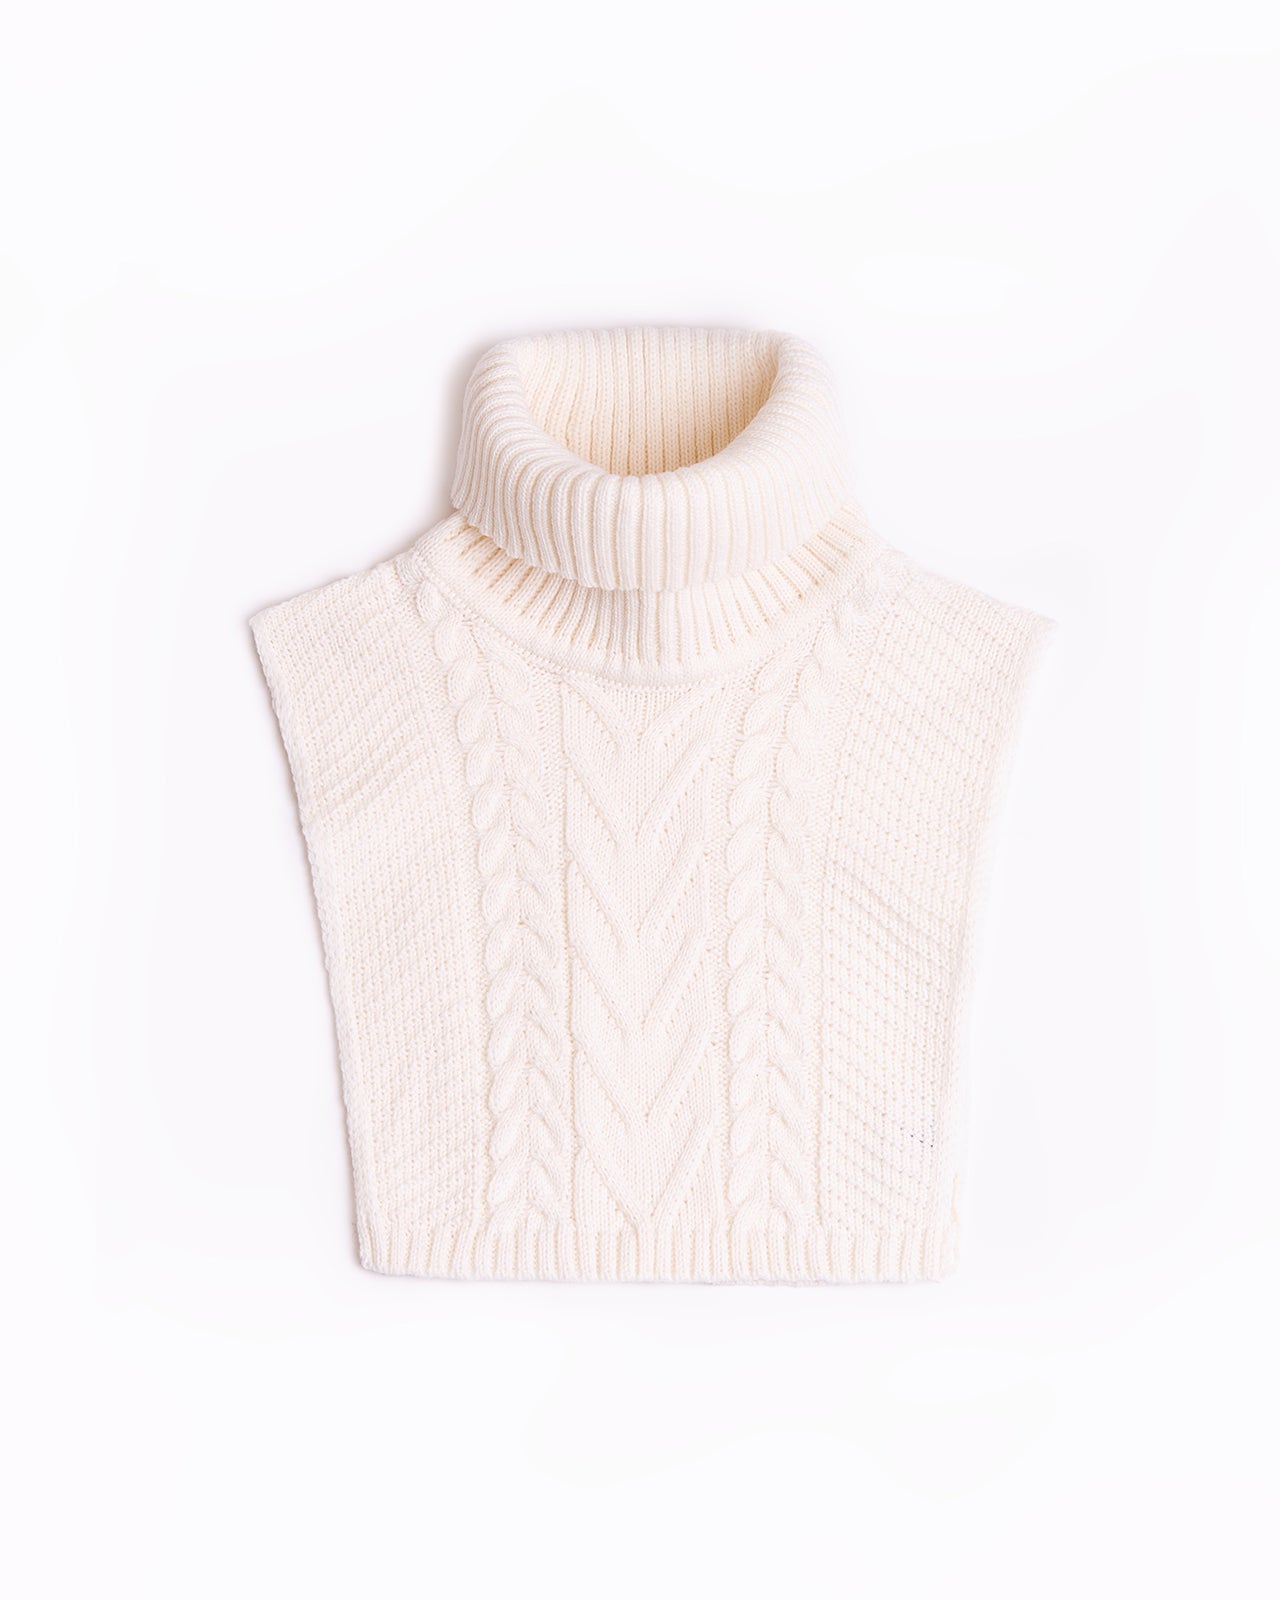 white wool turtleneck collar